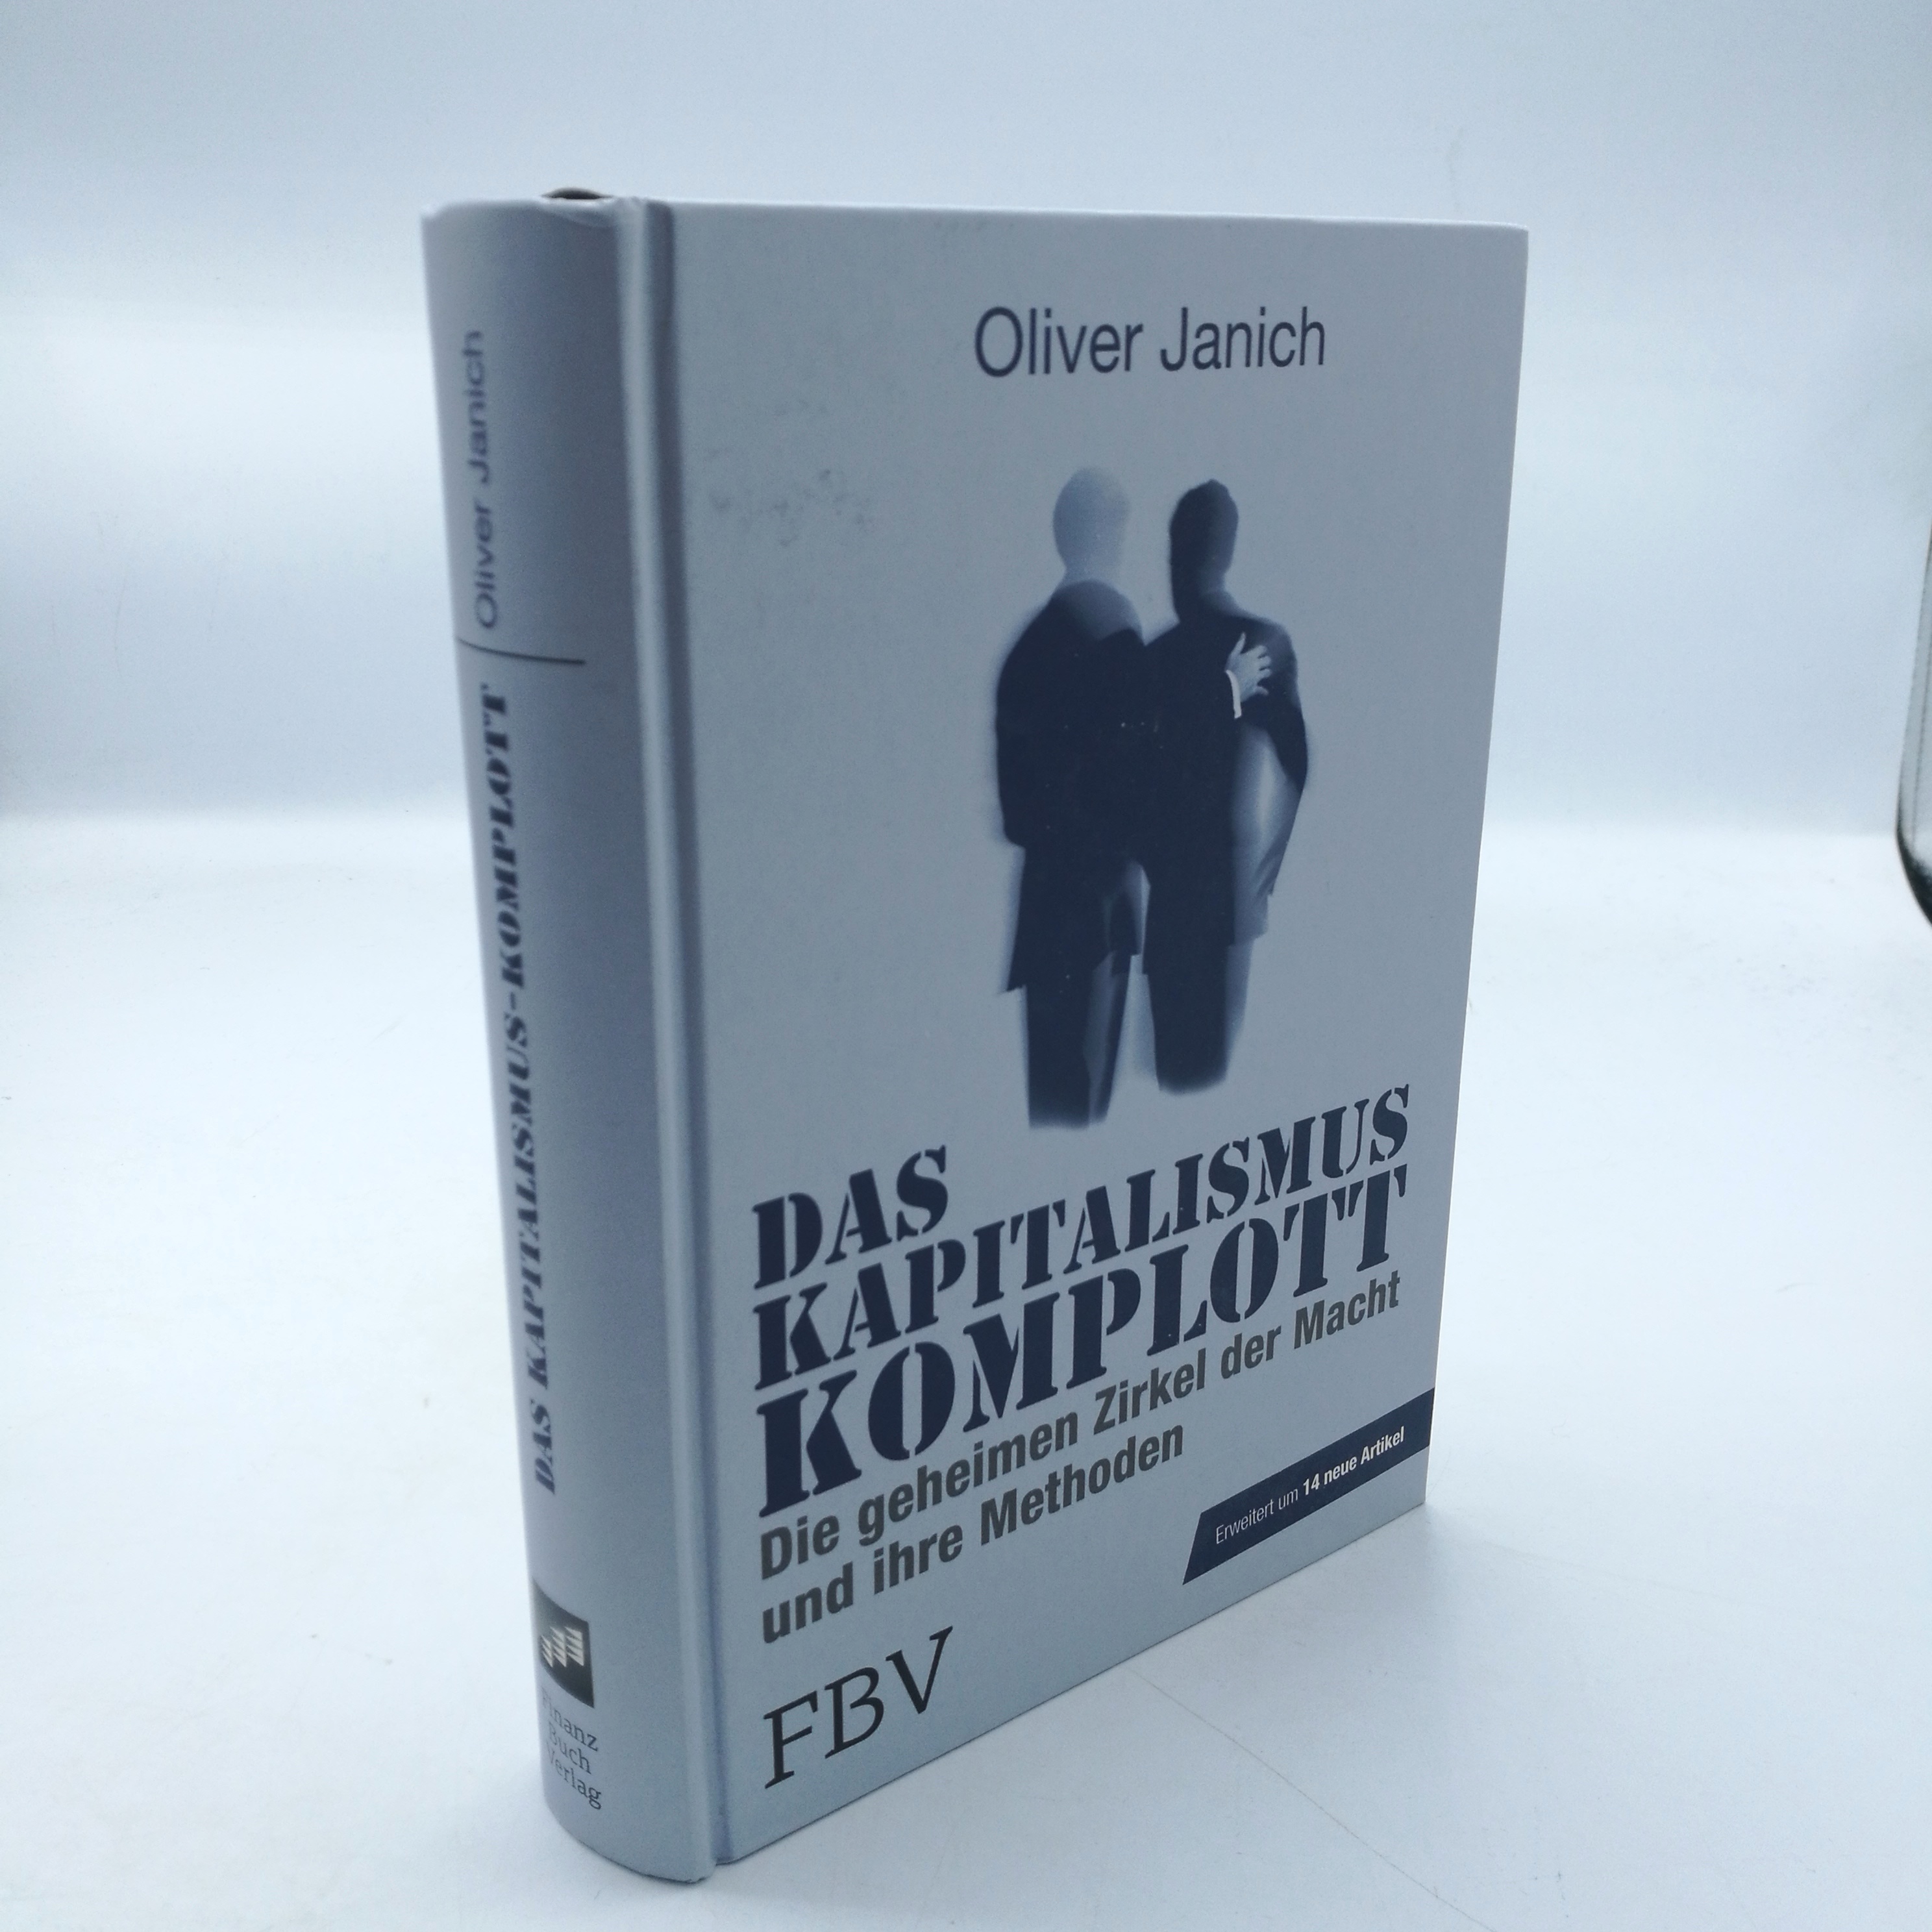 Das Kapitalismus-Komplott Die geheimen Zirkel der Macht und ihre Methoden / Oliver Janich - Janich, Oliver (Verfasser)